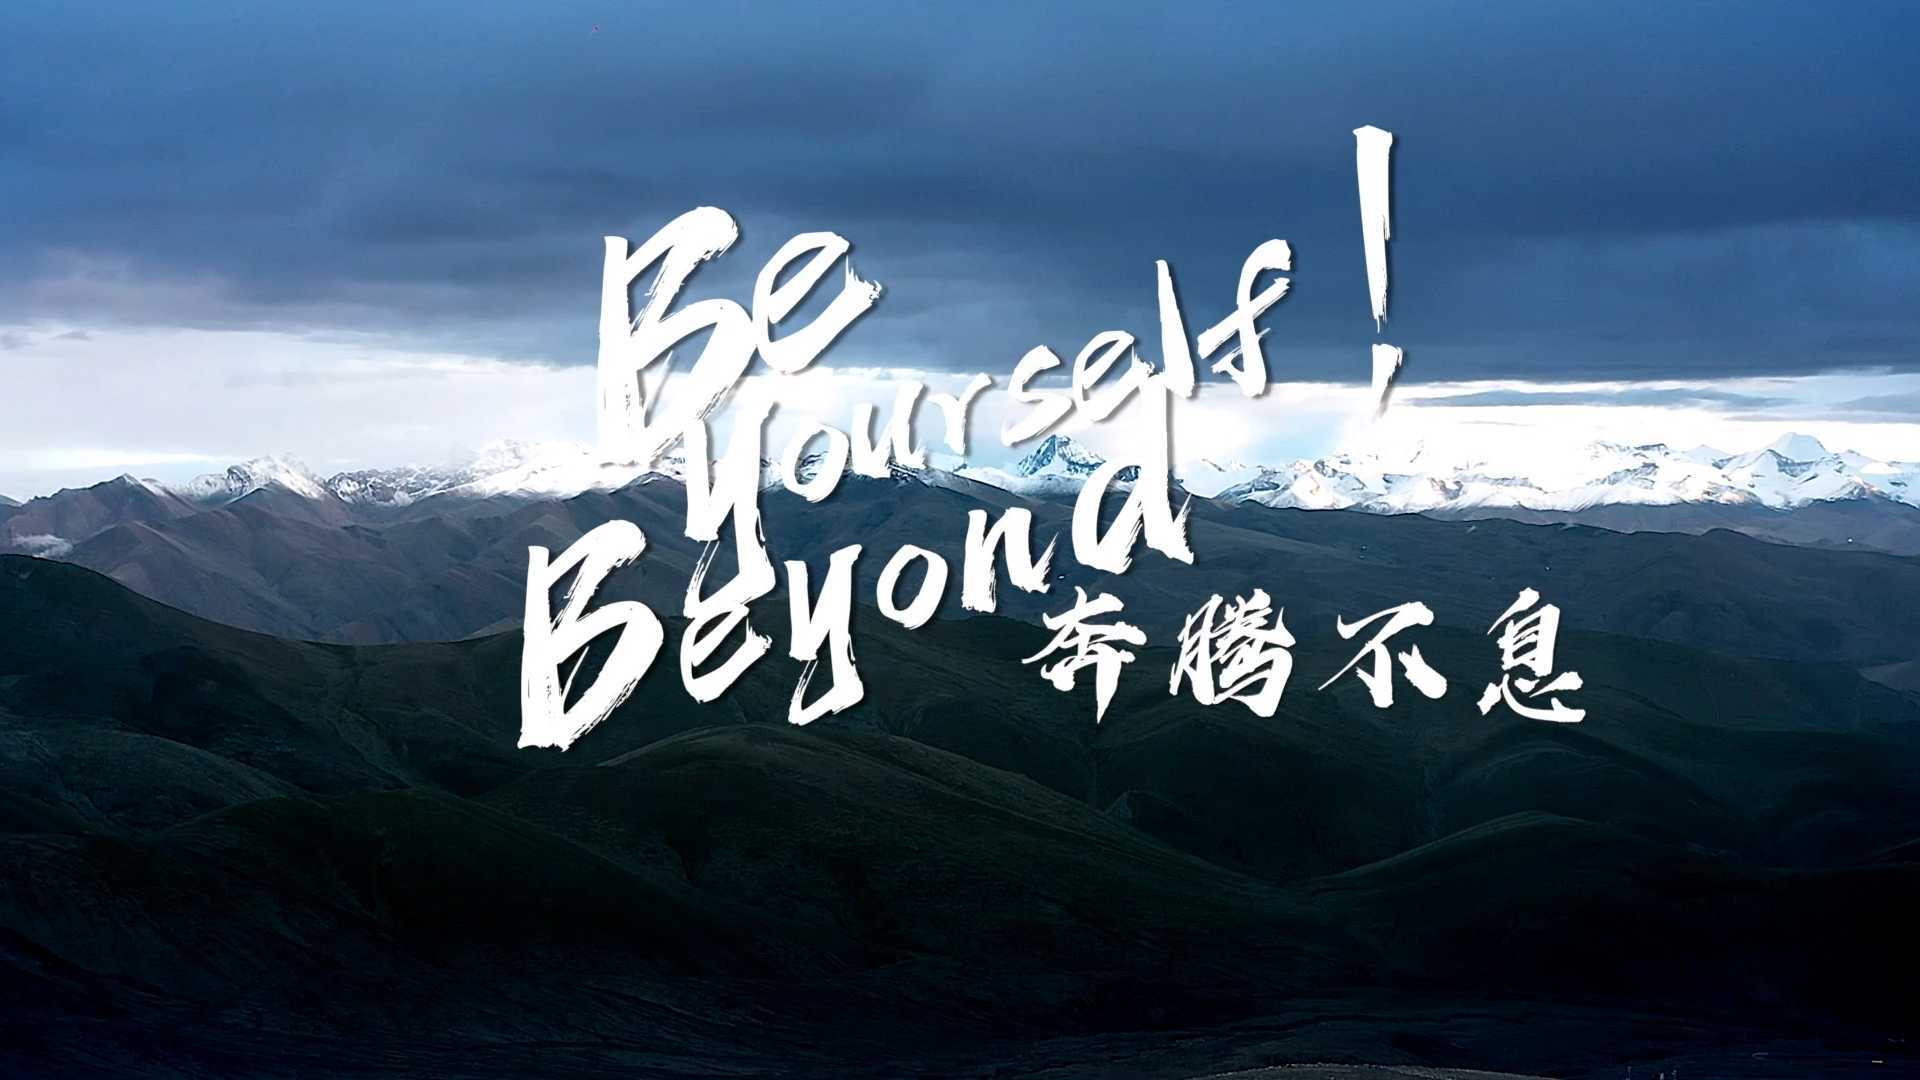 磐竹年度Showreel-Be yourself.Beyond yourself